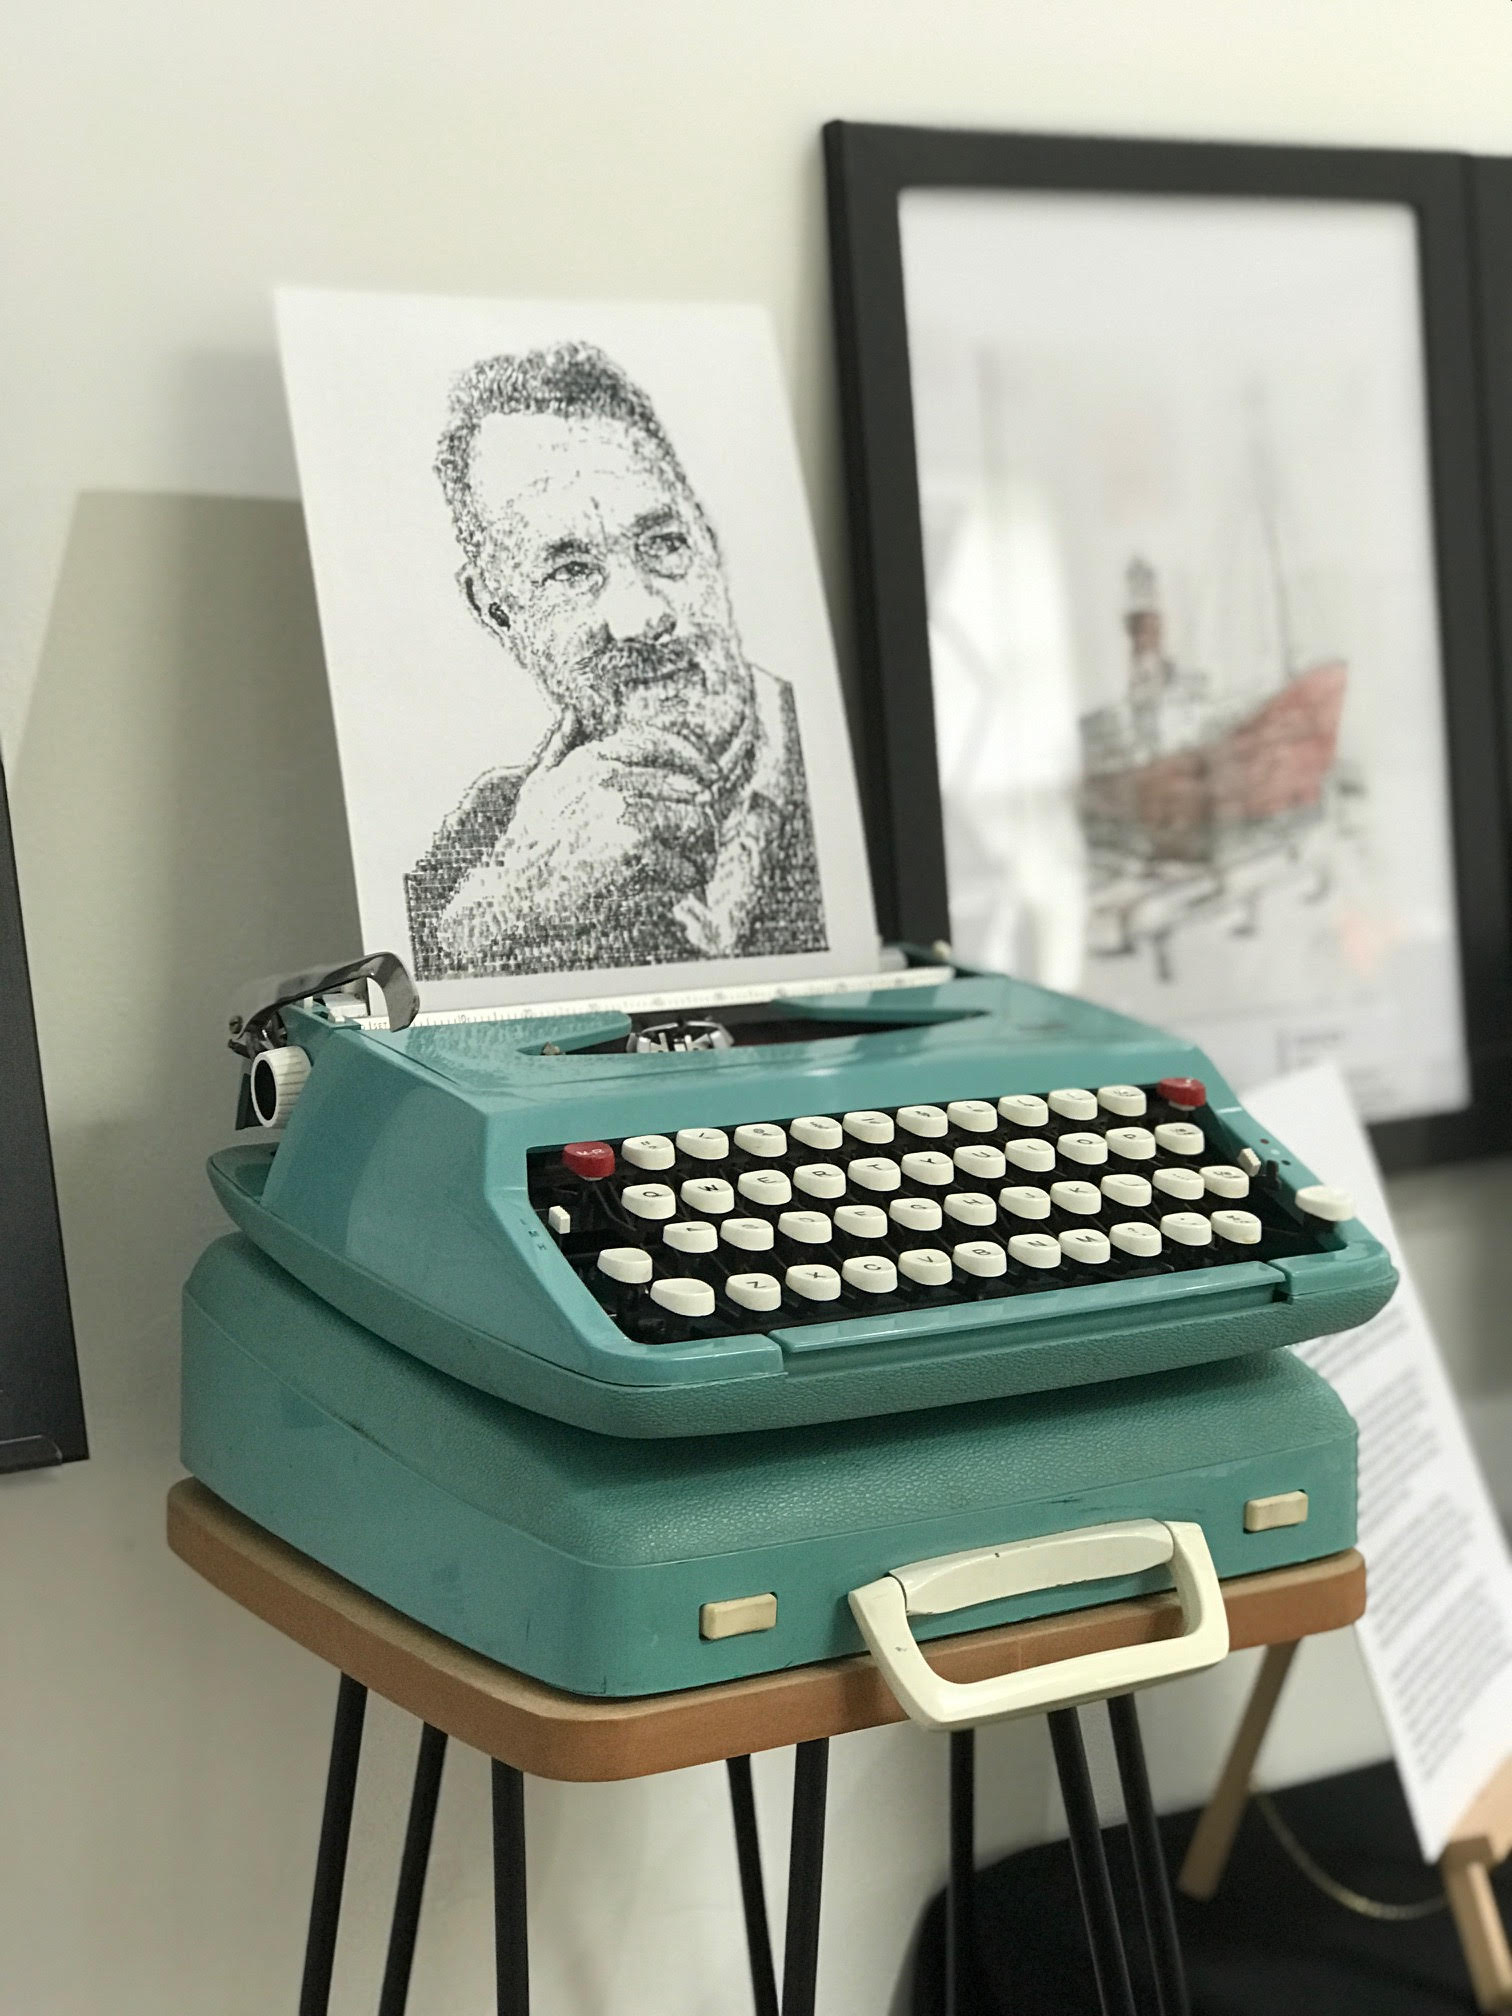 Typewriter Art by James Cook